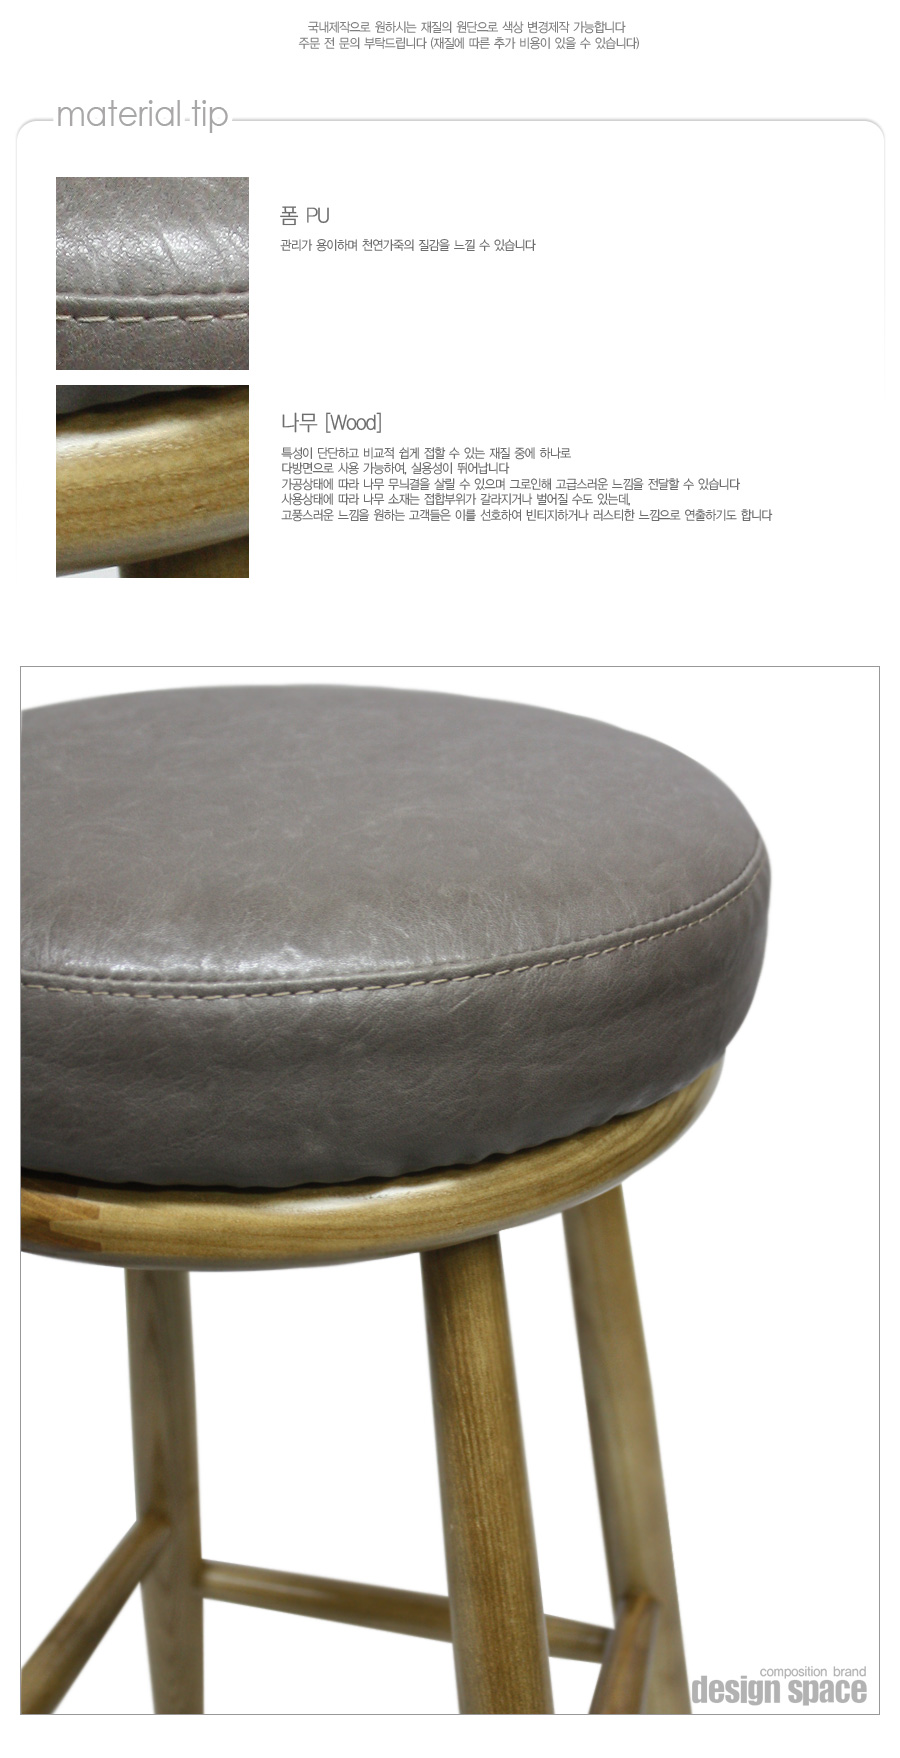 brunn-stool_03.jpg